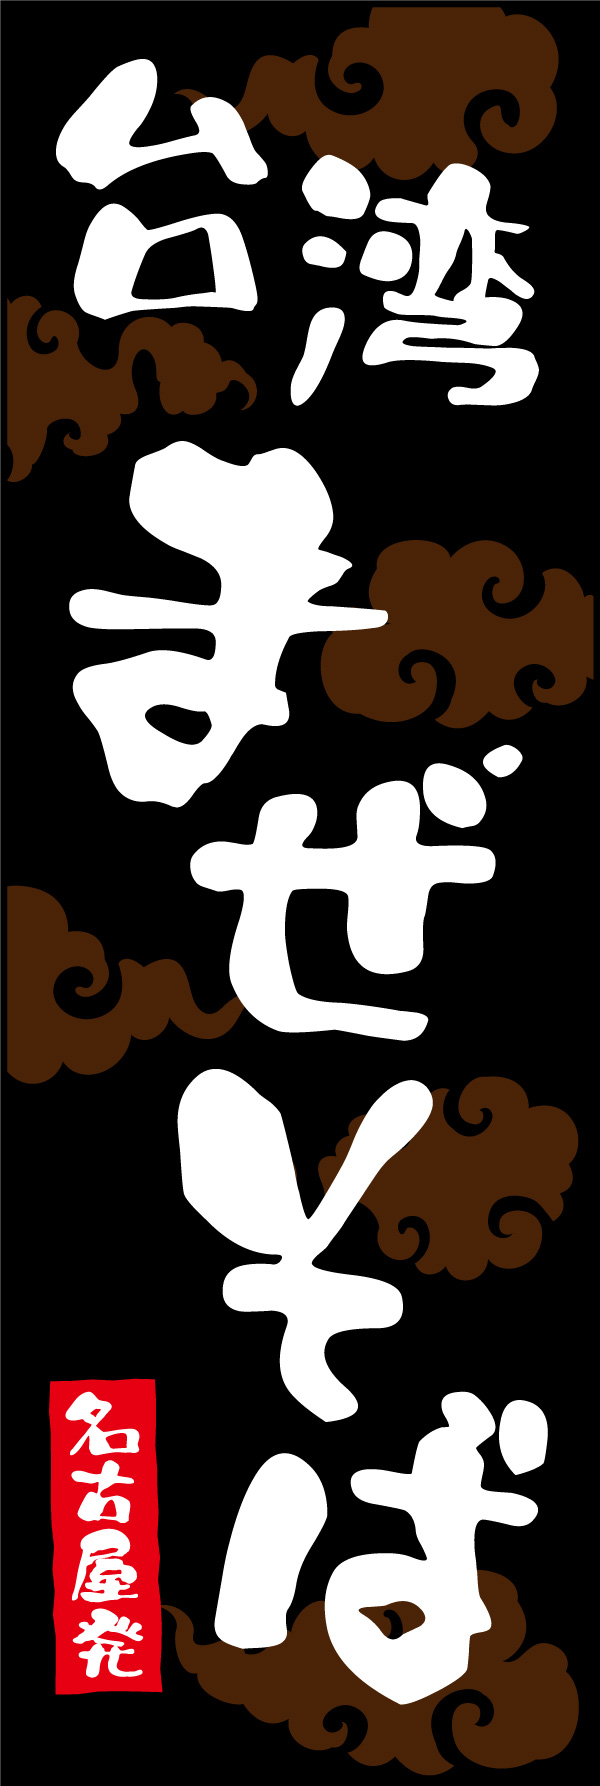 台湾まぜそば 01 「台湾まぜそば」ののぼりです。台湾まぜそば発祥の名古屋をイメージし、本家のような勢いのある文字で大胆にレイアウトしました。(Y.M)